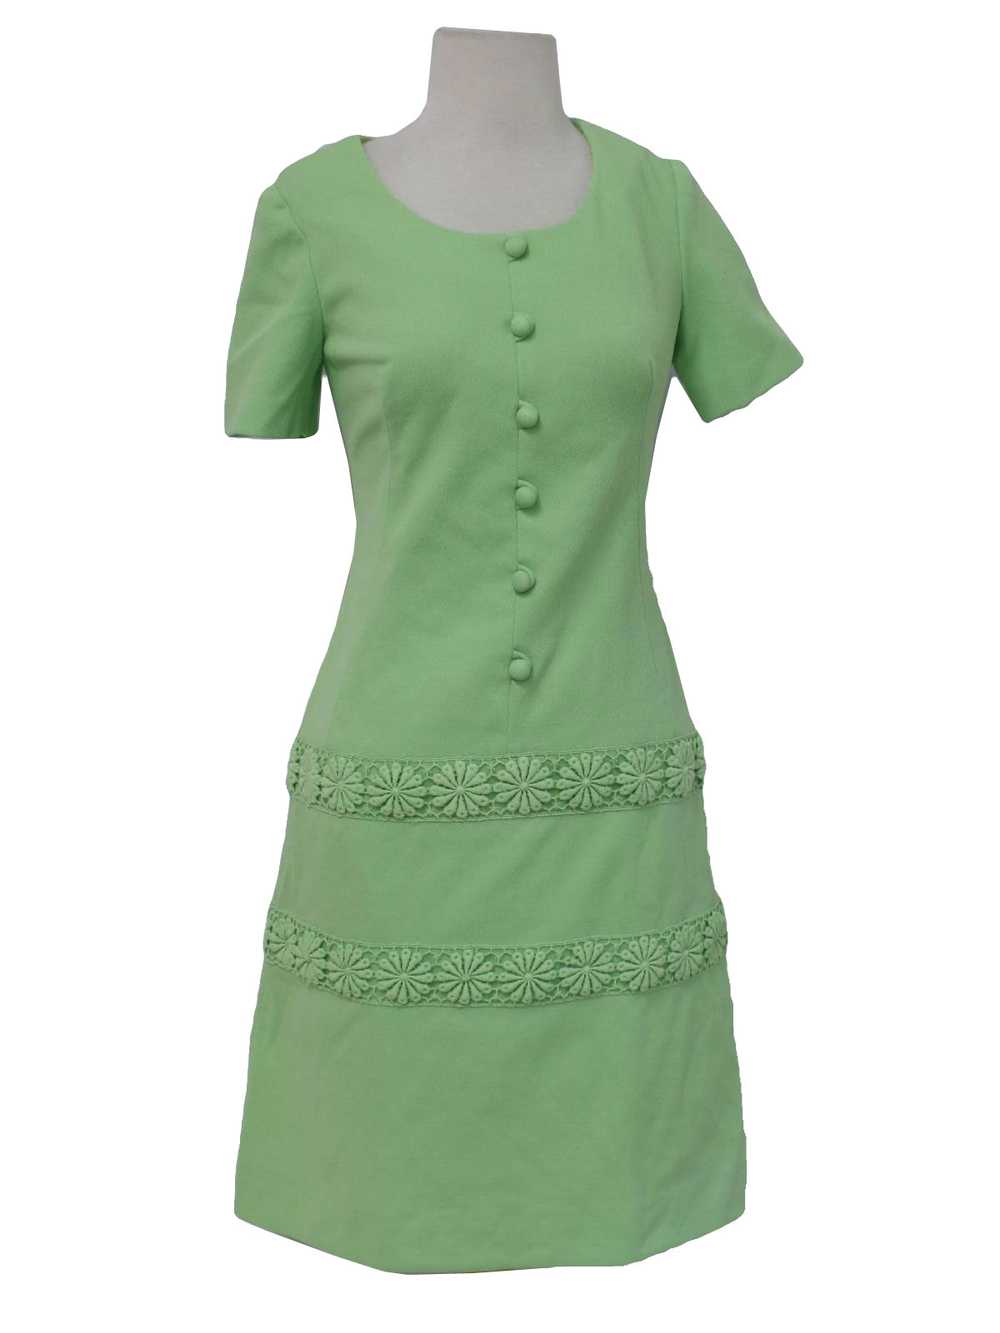 1970's Knit Dress - image 1